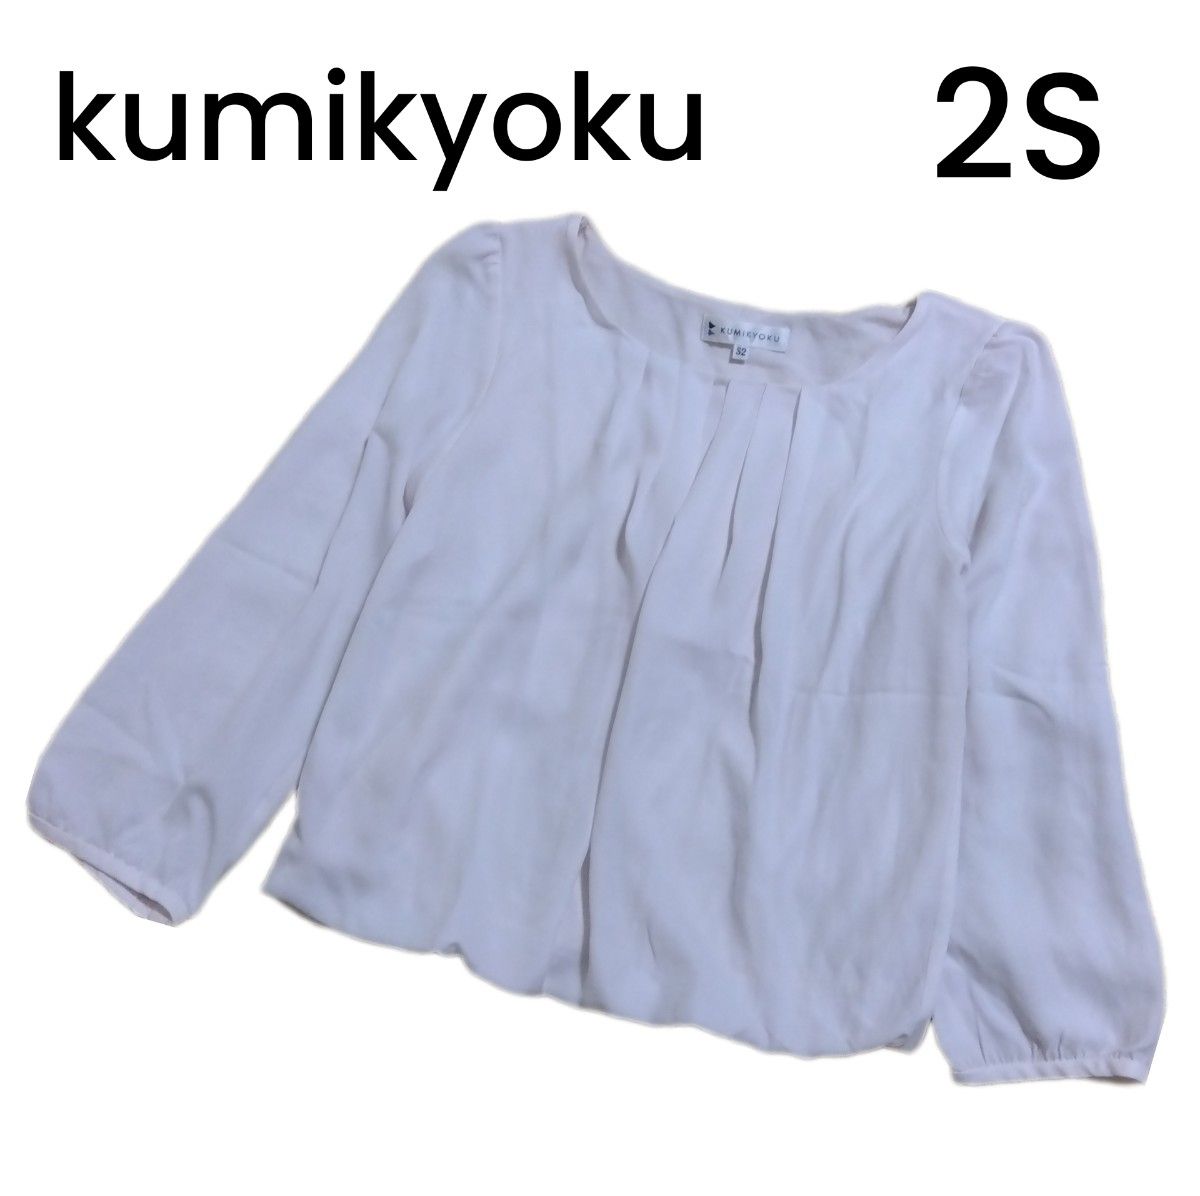 【kumikyoku】ピンクベージュ ギャザーブラウス 七分袖 S2サイズ